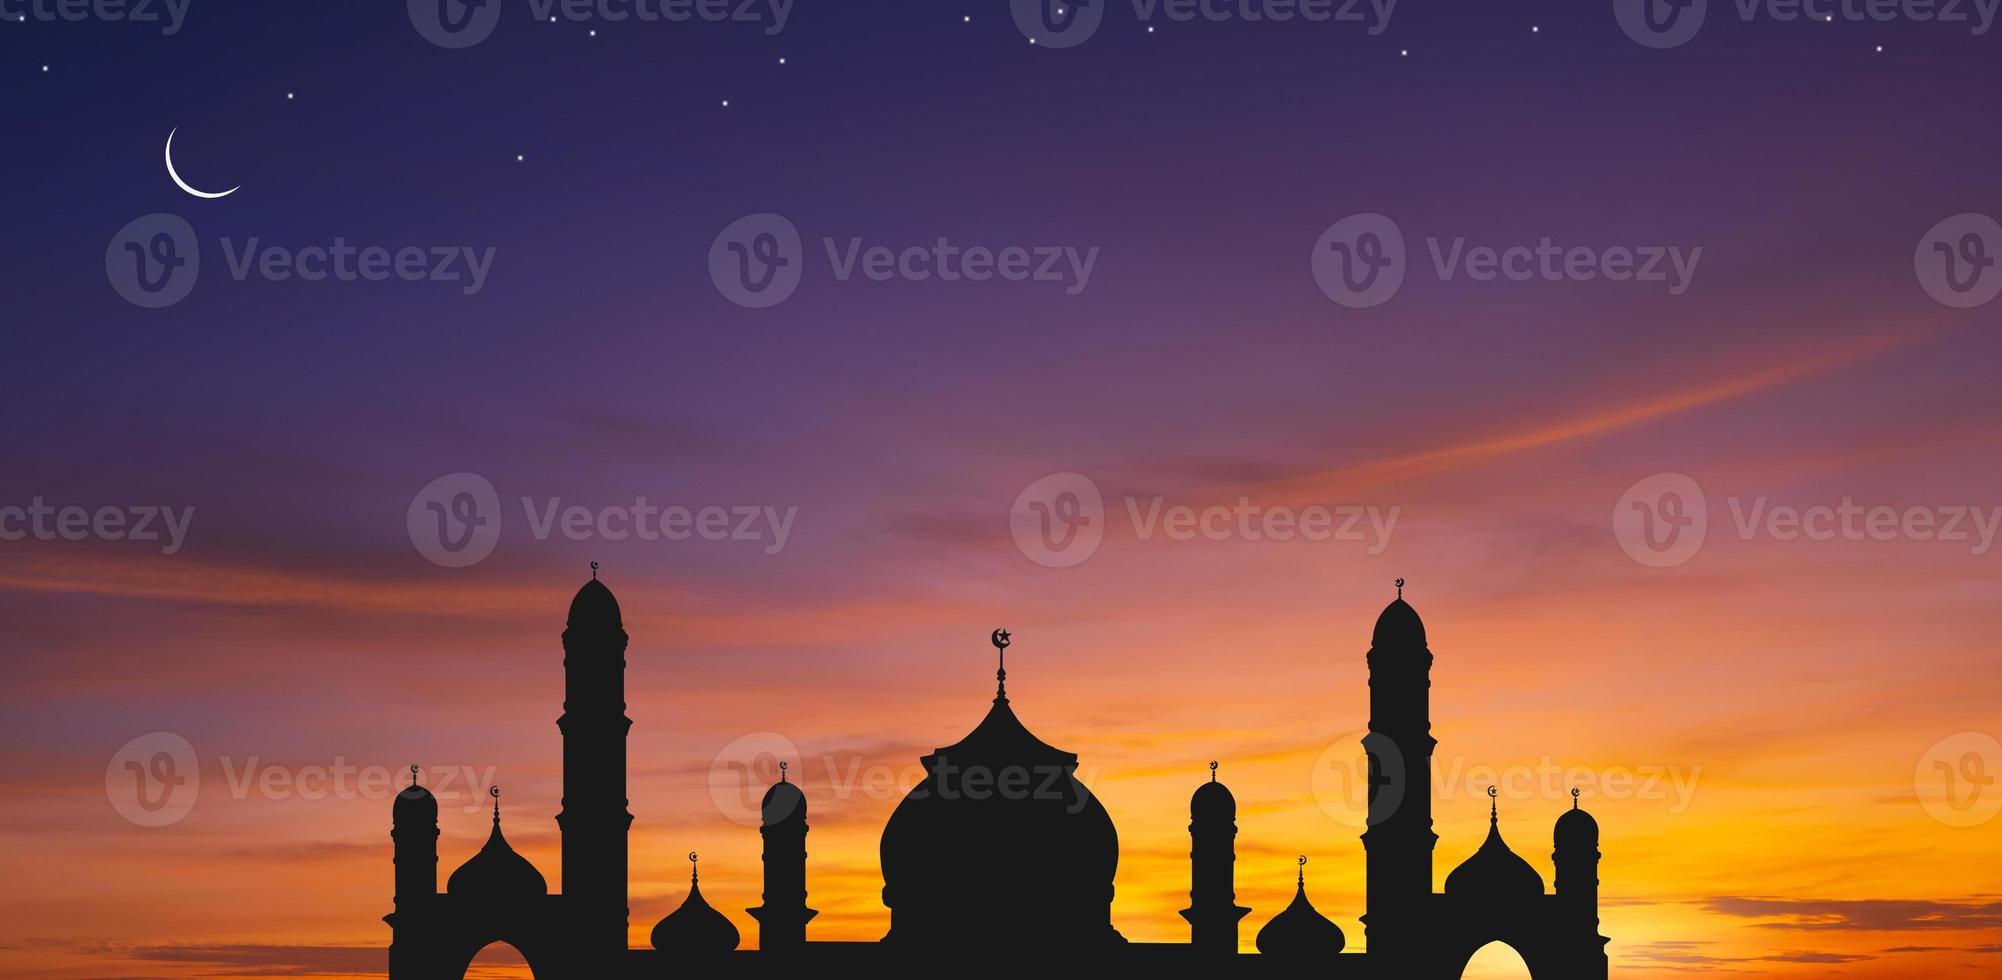 panorama- se av silhuett moské kupol mot färgrik skymning himmel och halvmåne måne med stjärnor i de kväll skymning, bakgrund design för iftar period under ramadan helig månad foto